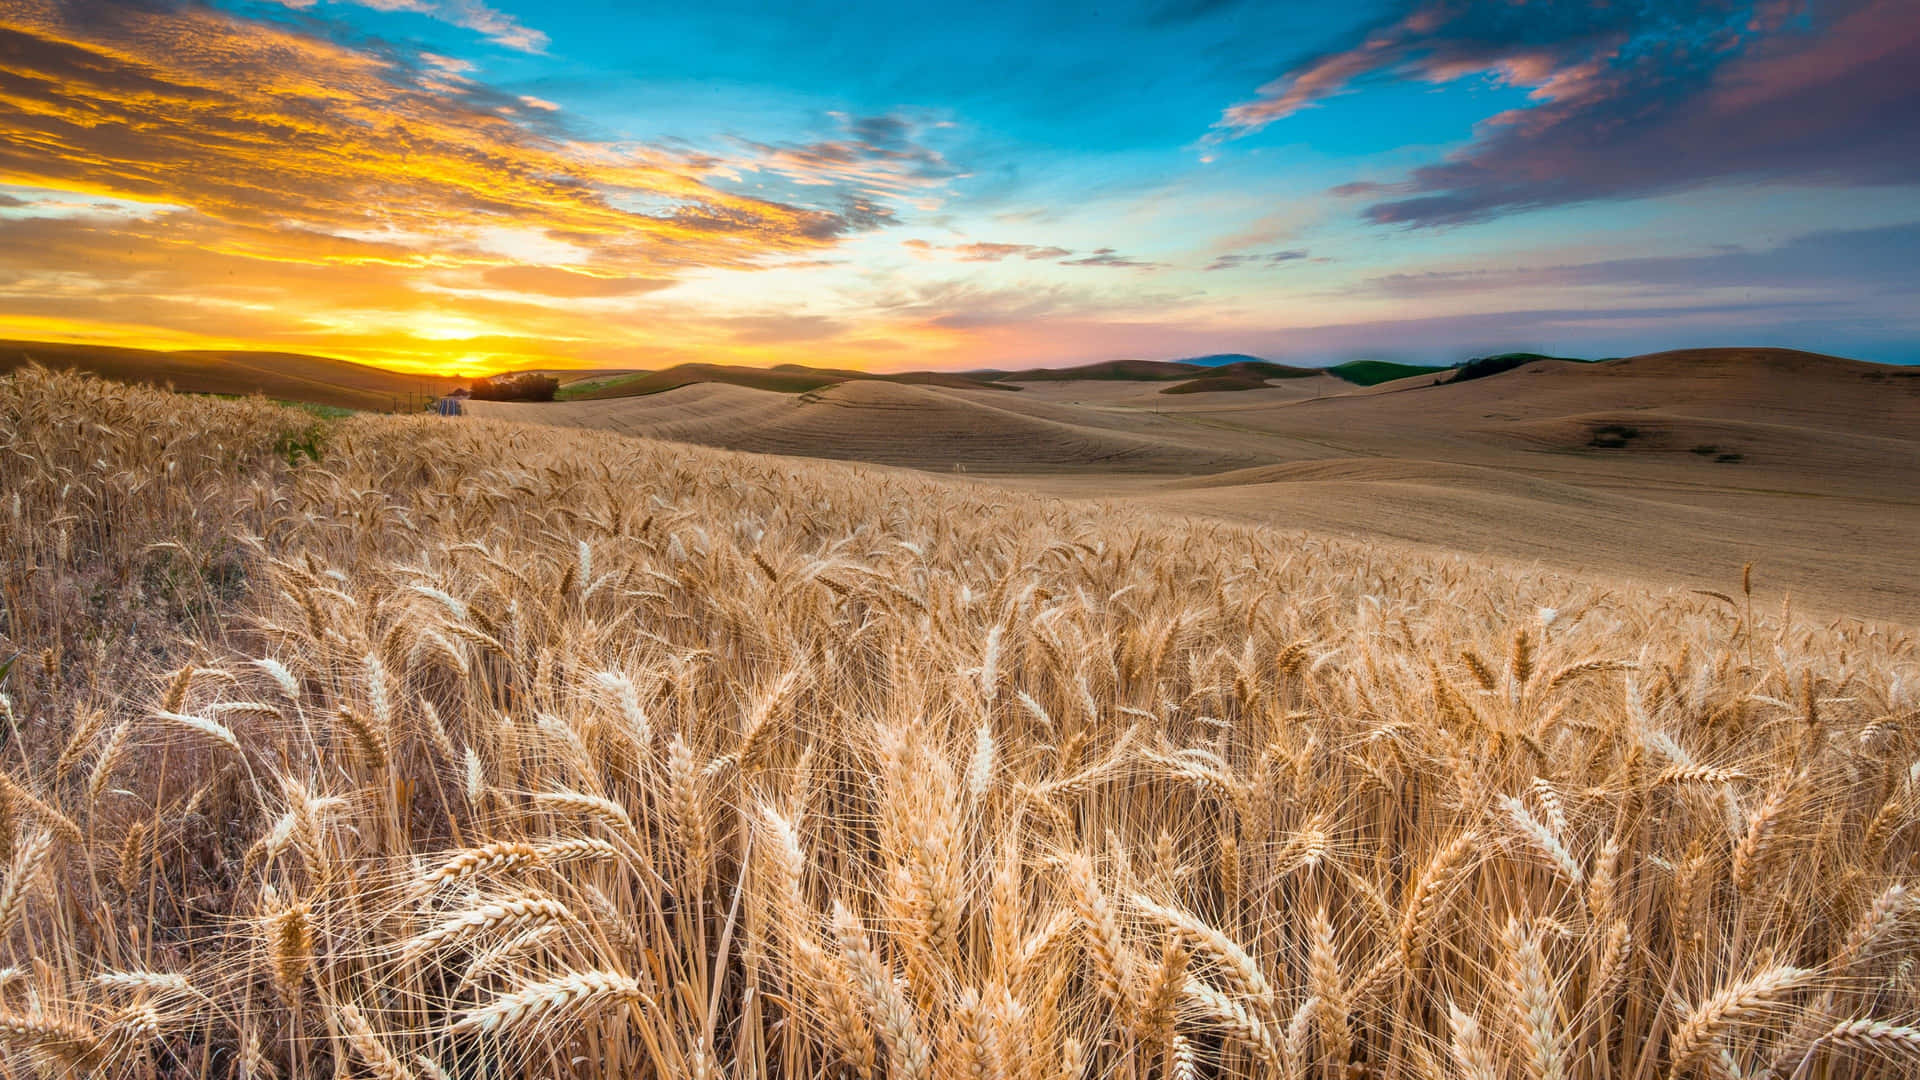 Golden ripe wheat grains in the warm summer sun